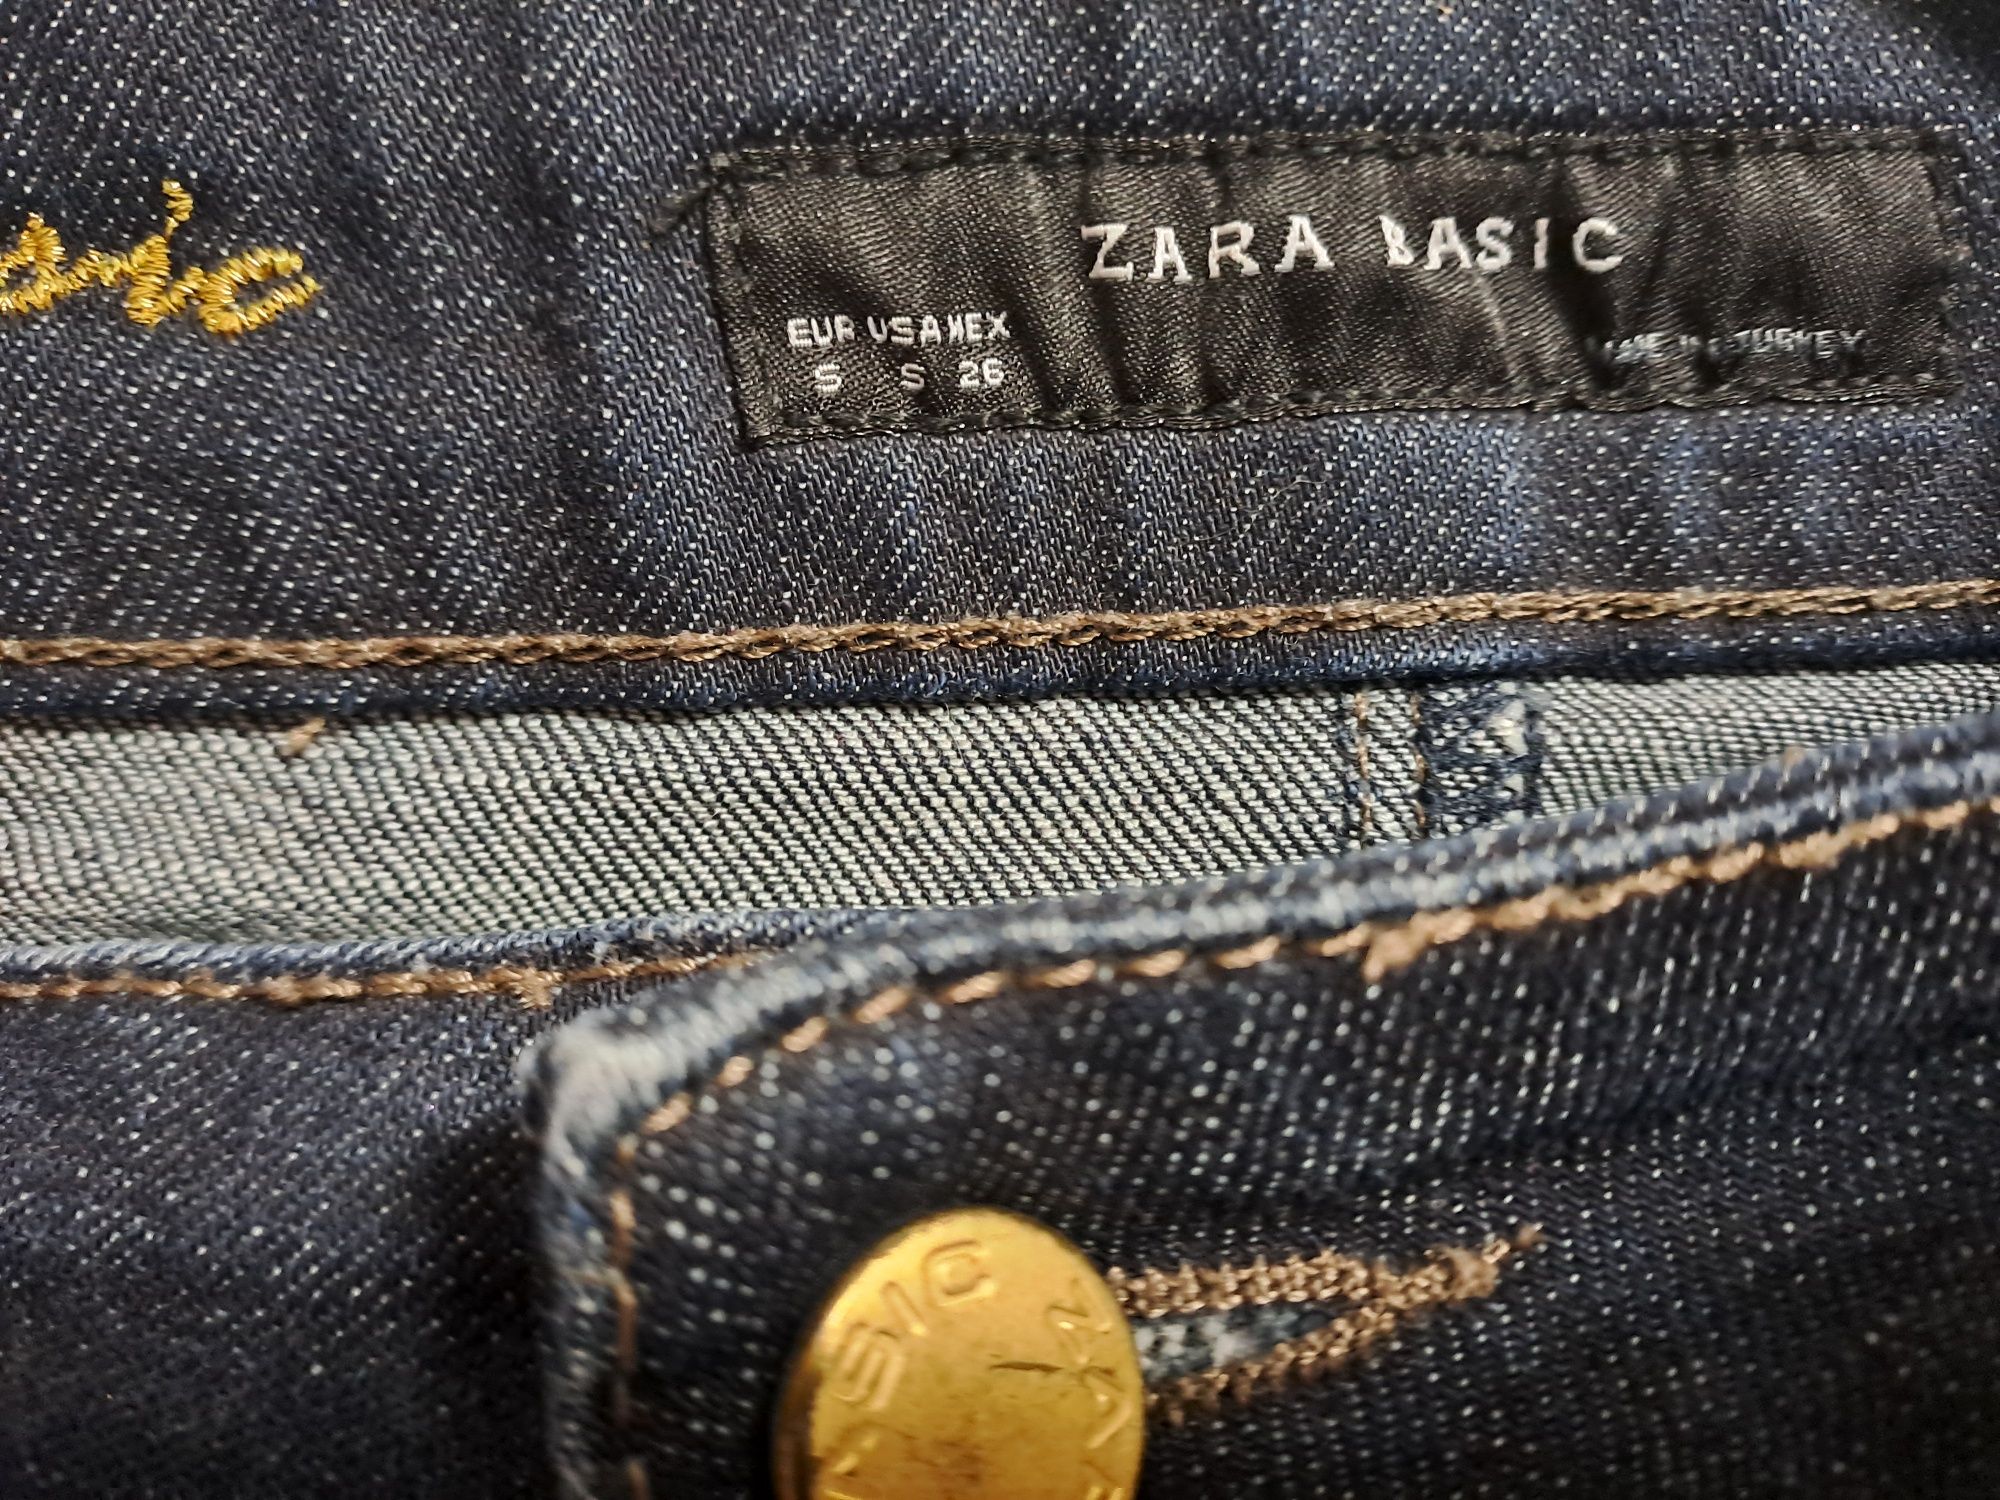 Spodnica Zara Basic S